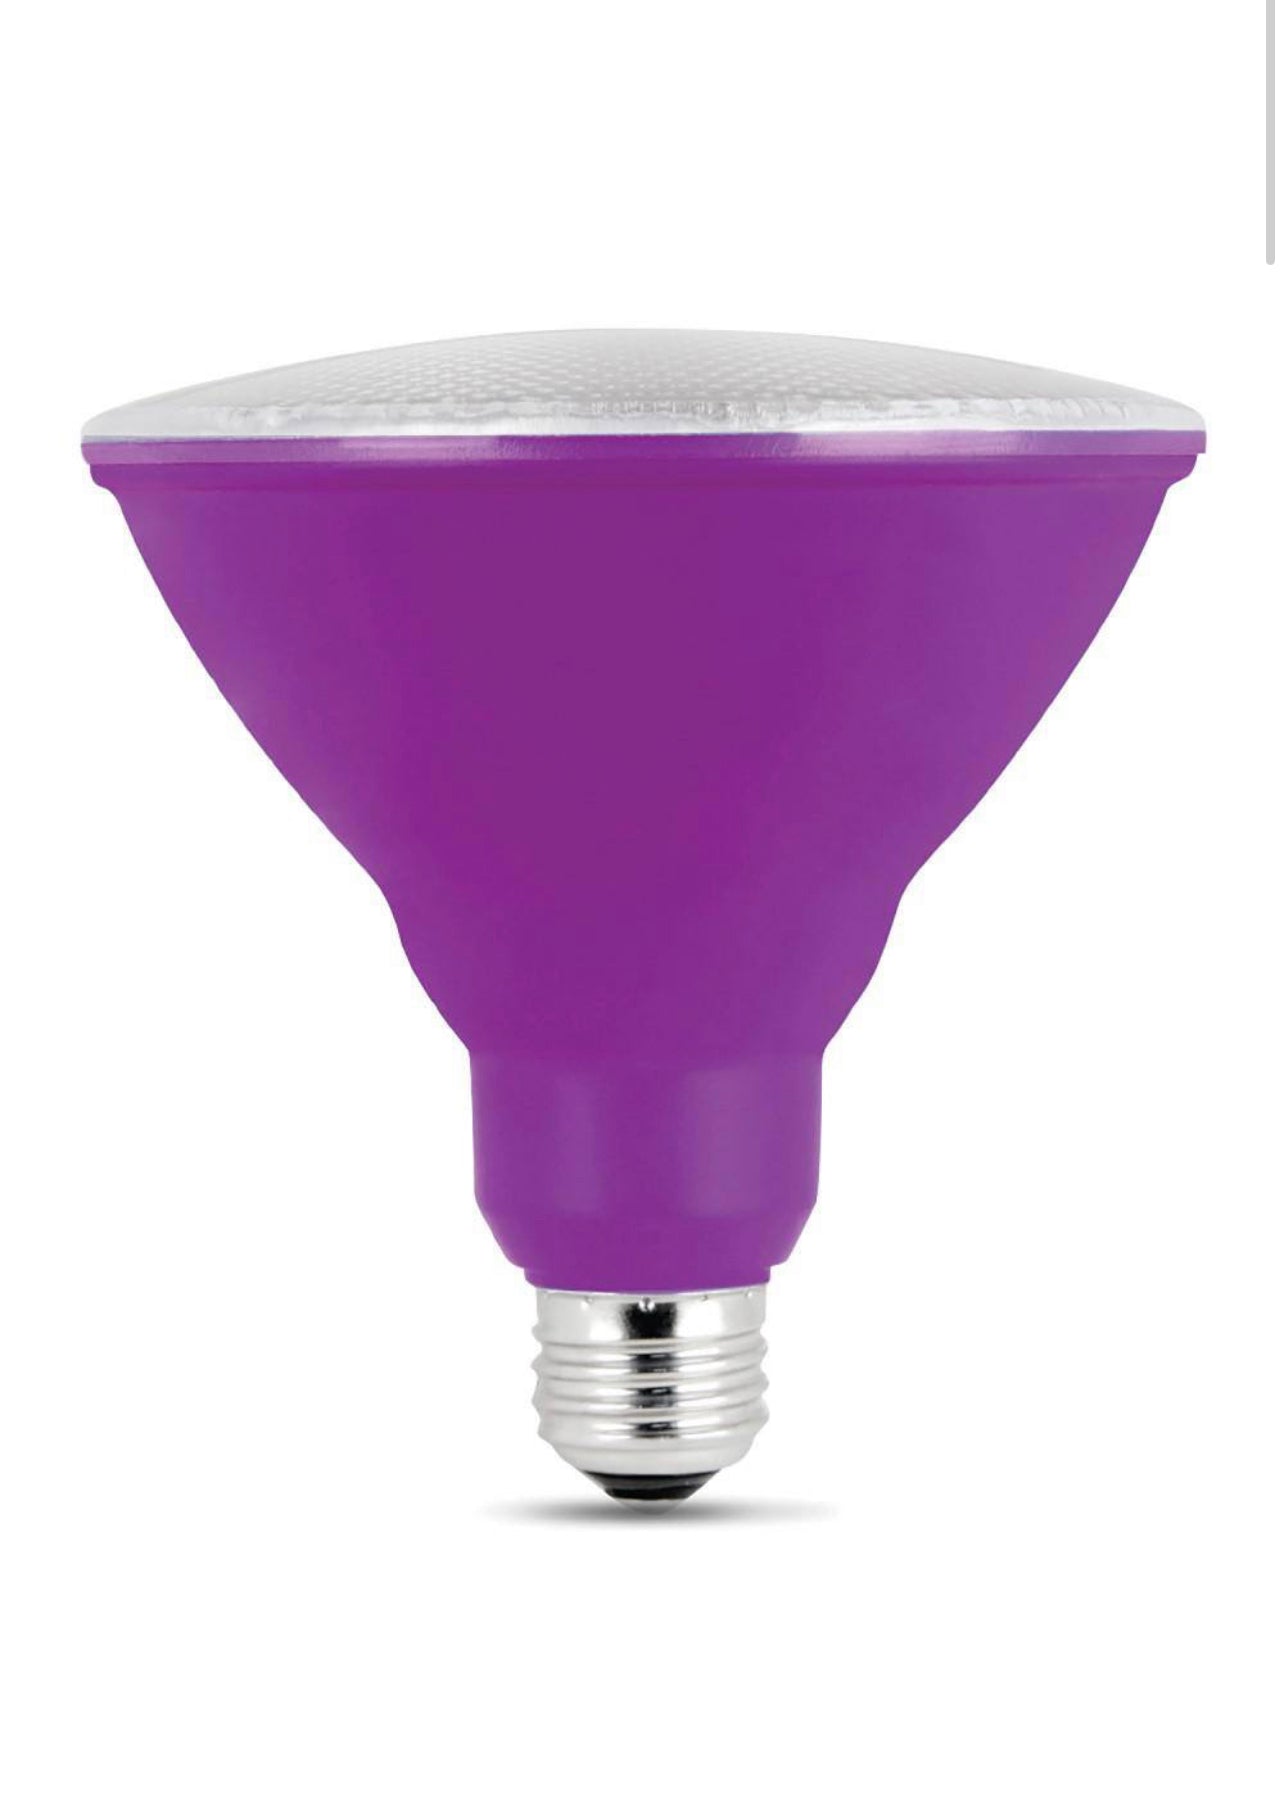 Feit Electric 90-Watt Equivalent PAR38 Weatherproof Outdoor Landscape Purple Color LED Flood Light Bulb (1-Bulb) Damaged Box